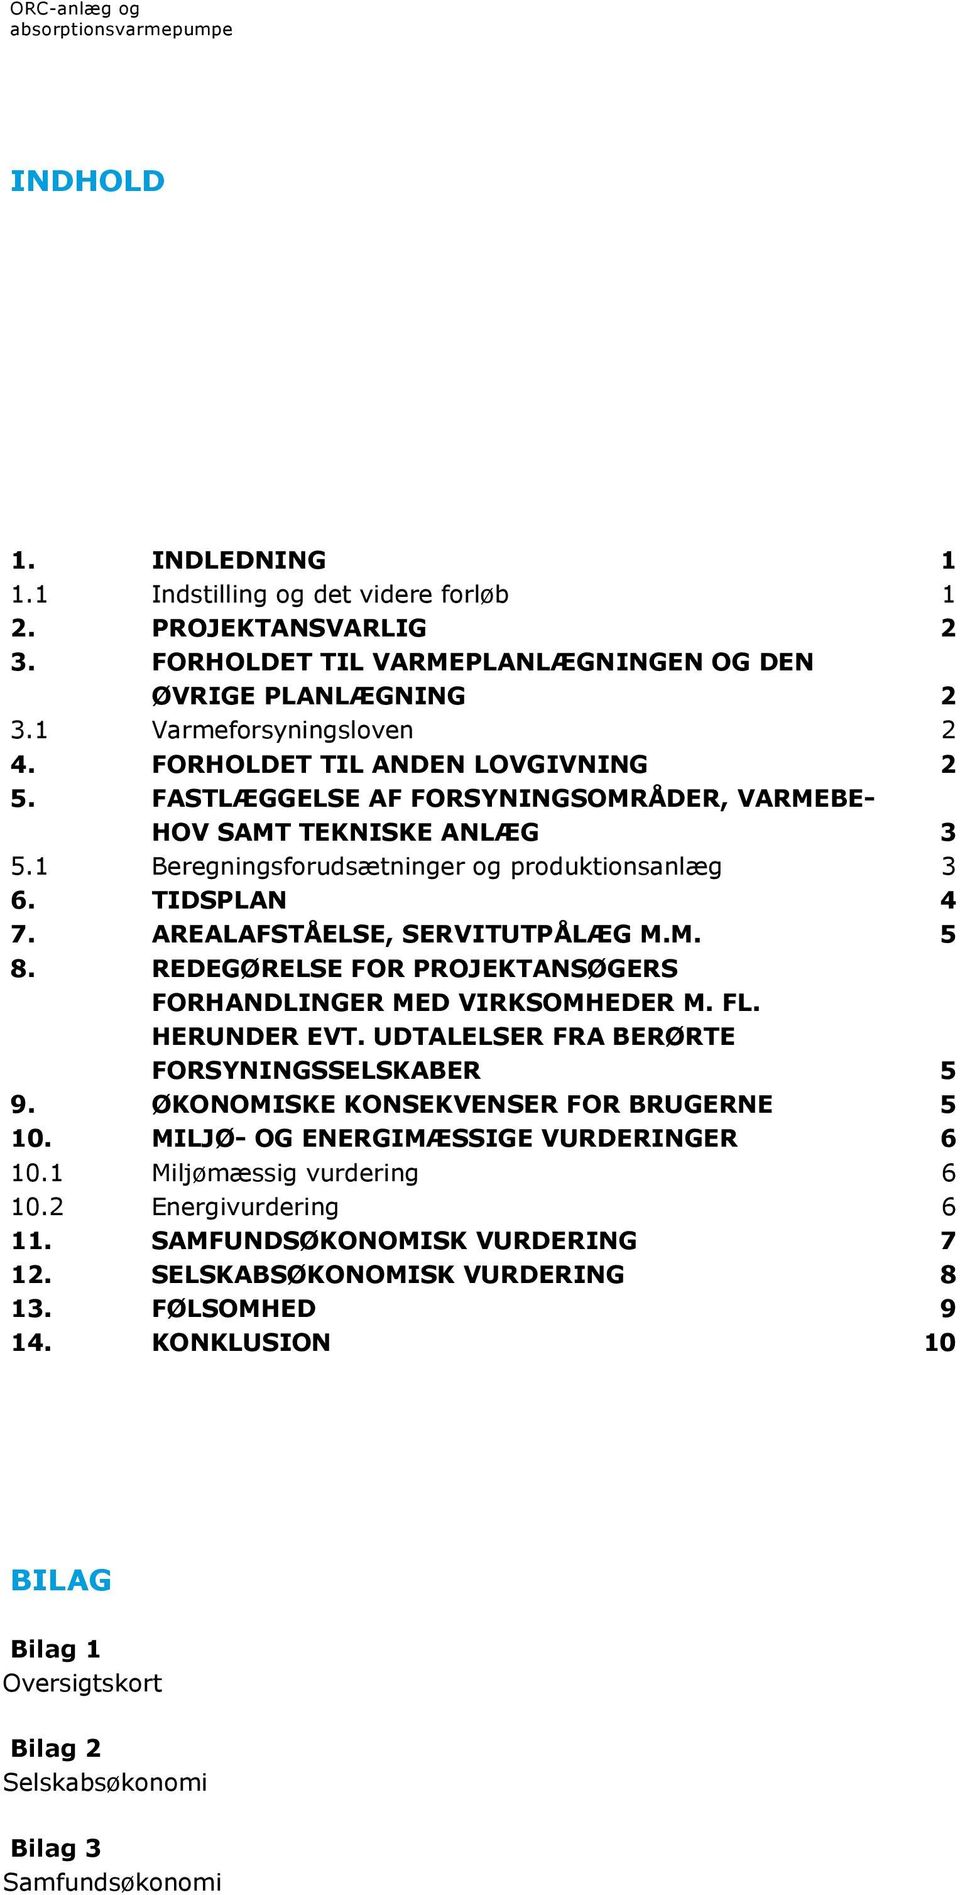 AREALAFSTÅELSE, SERVITUTPÅLÆG M.M. 5 8. REDEGØRELSE FOR PROJEKTANSØGERS FORHANDLINGER MED VIRKSOMHEDER M. FL. HERUNDER EVT. UDTALELSER FRA BERØRTE FORSYNINGSSELSKABER 5 9.